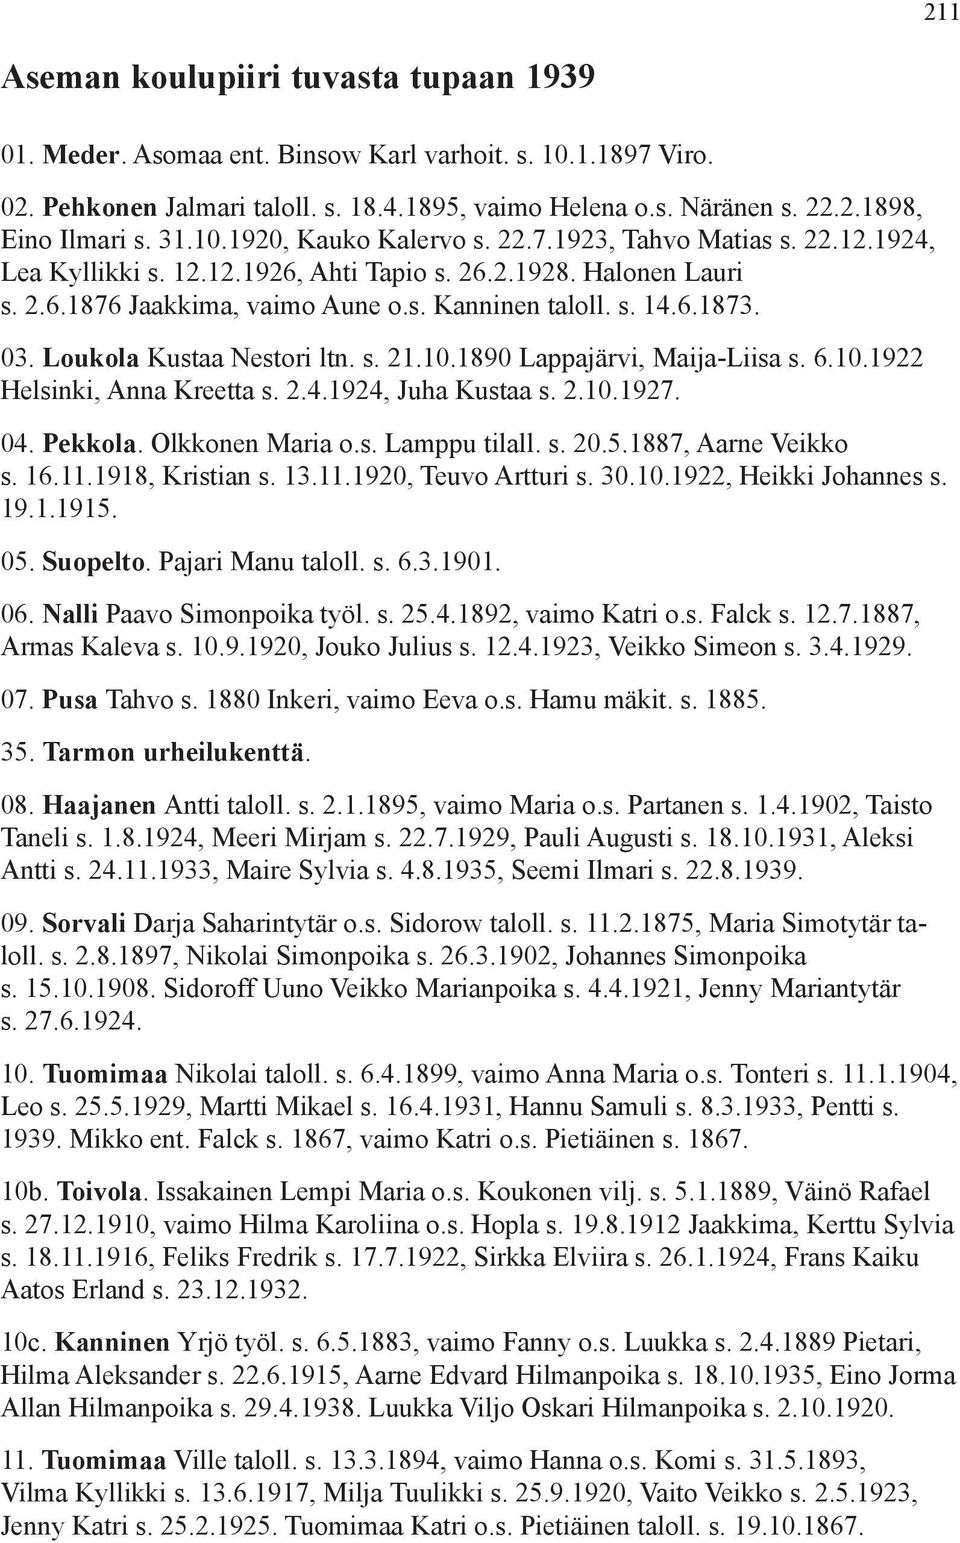 03. Loukola Kustaa Nestori ltn. s. 21.10.1890 Lappajärvi, Maija-Liisa s. 6.10.1922 Helsinki, Anna Kreetta s. 2.4.1924, Juha Kustaa s. 2.10.1927. 04. Pekkola. Olkkonen Maria o.s. Lamppu tilall. s. 20.